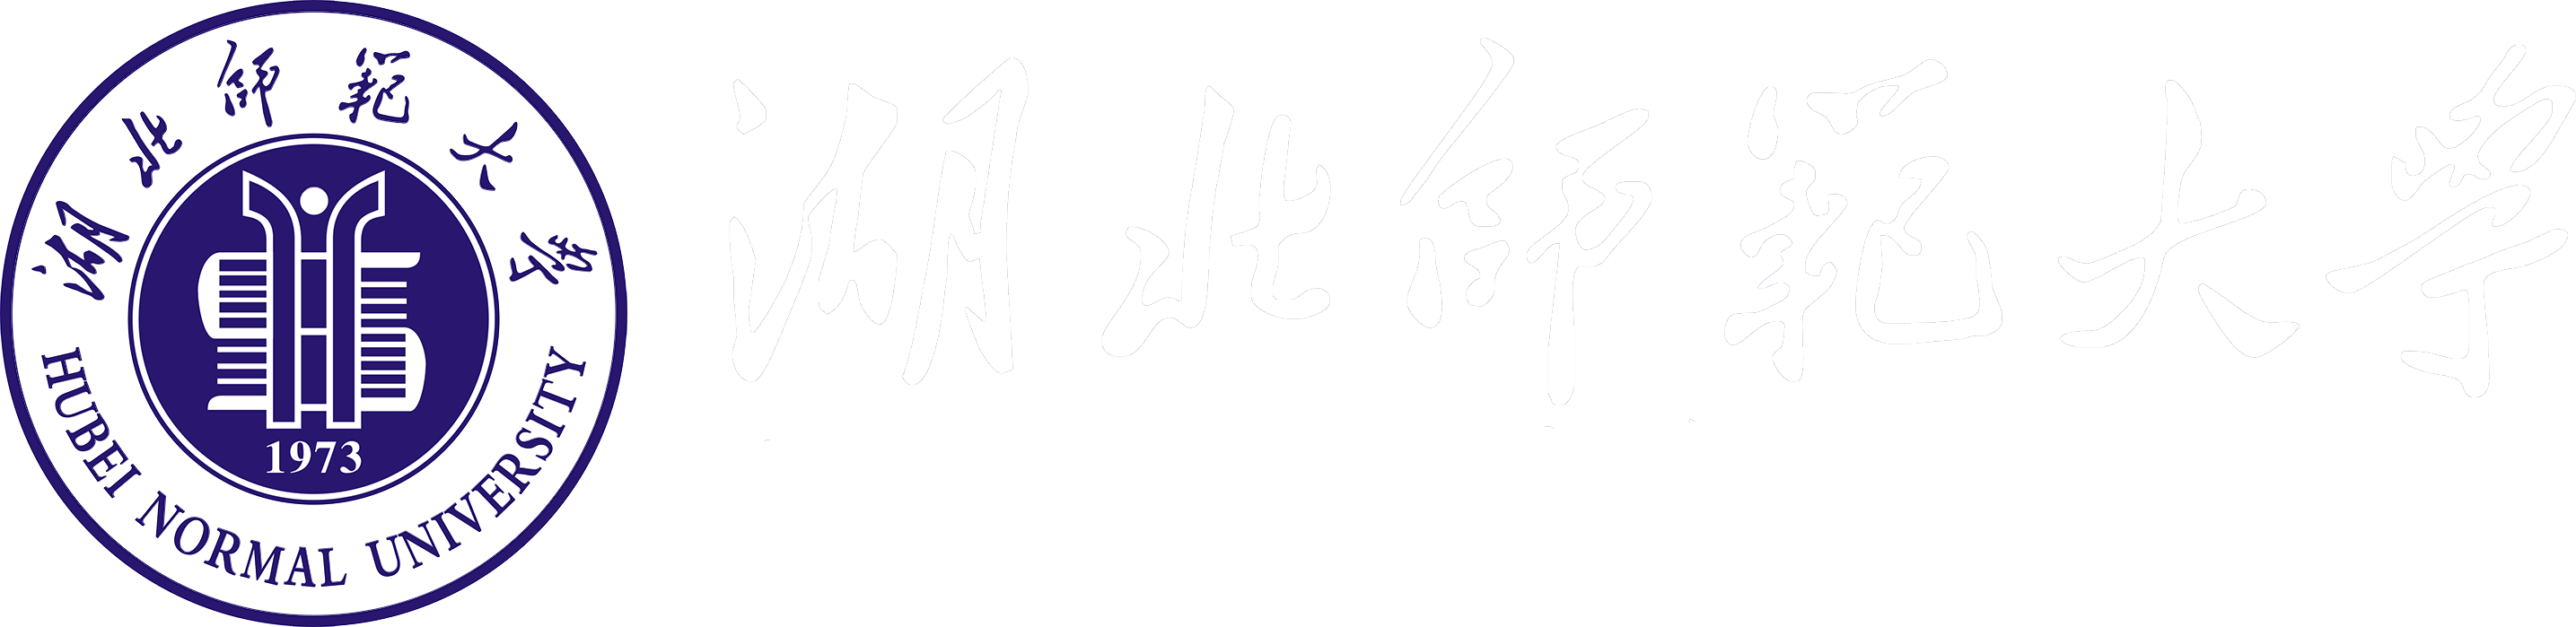 新浦京8883官网登录页面